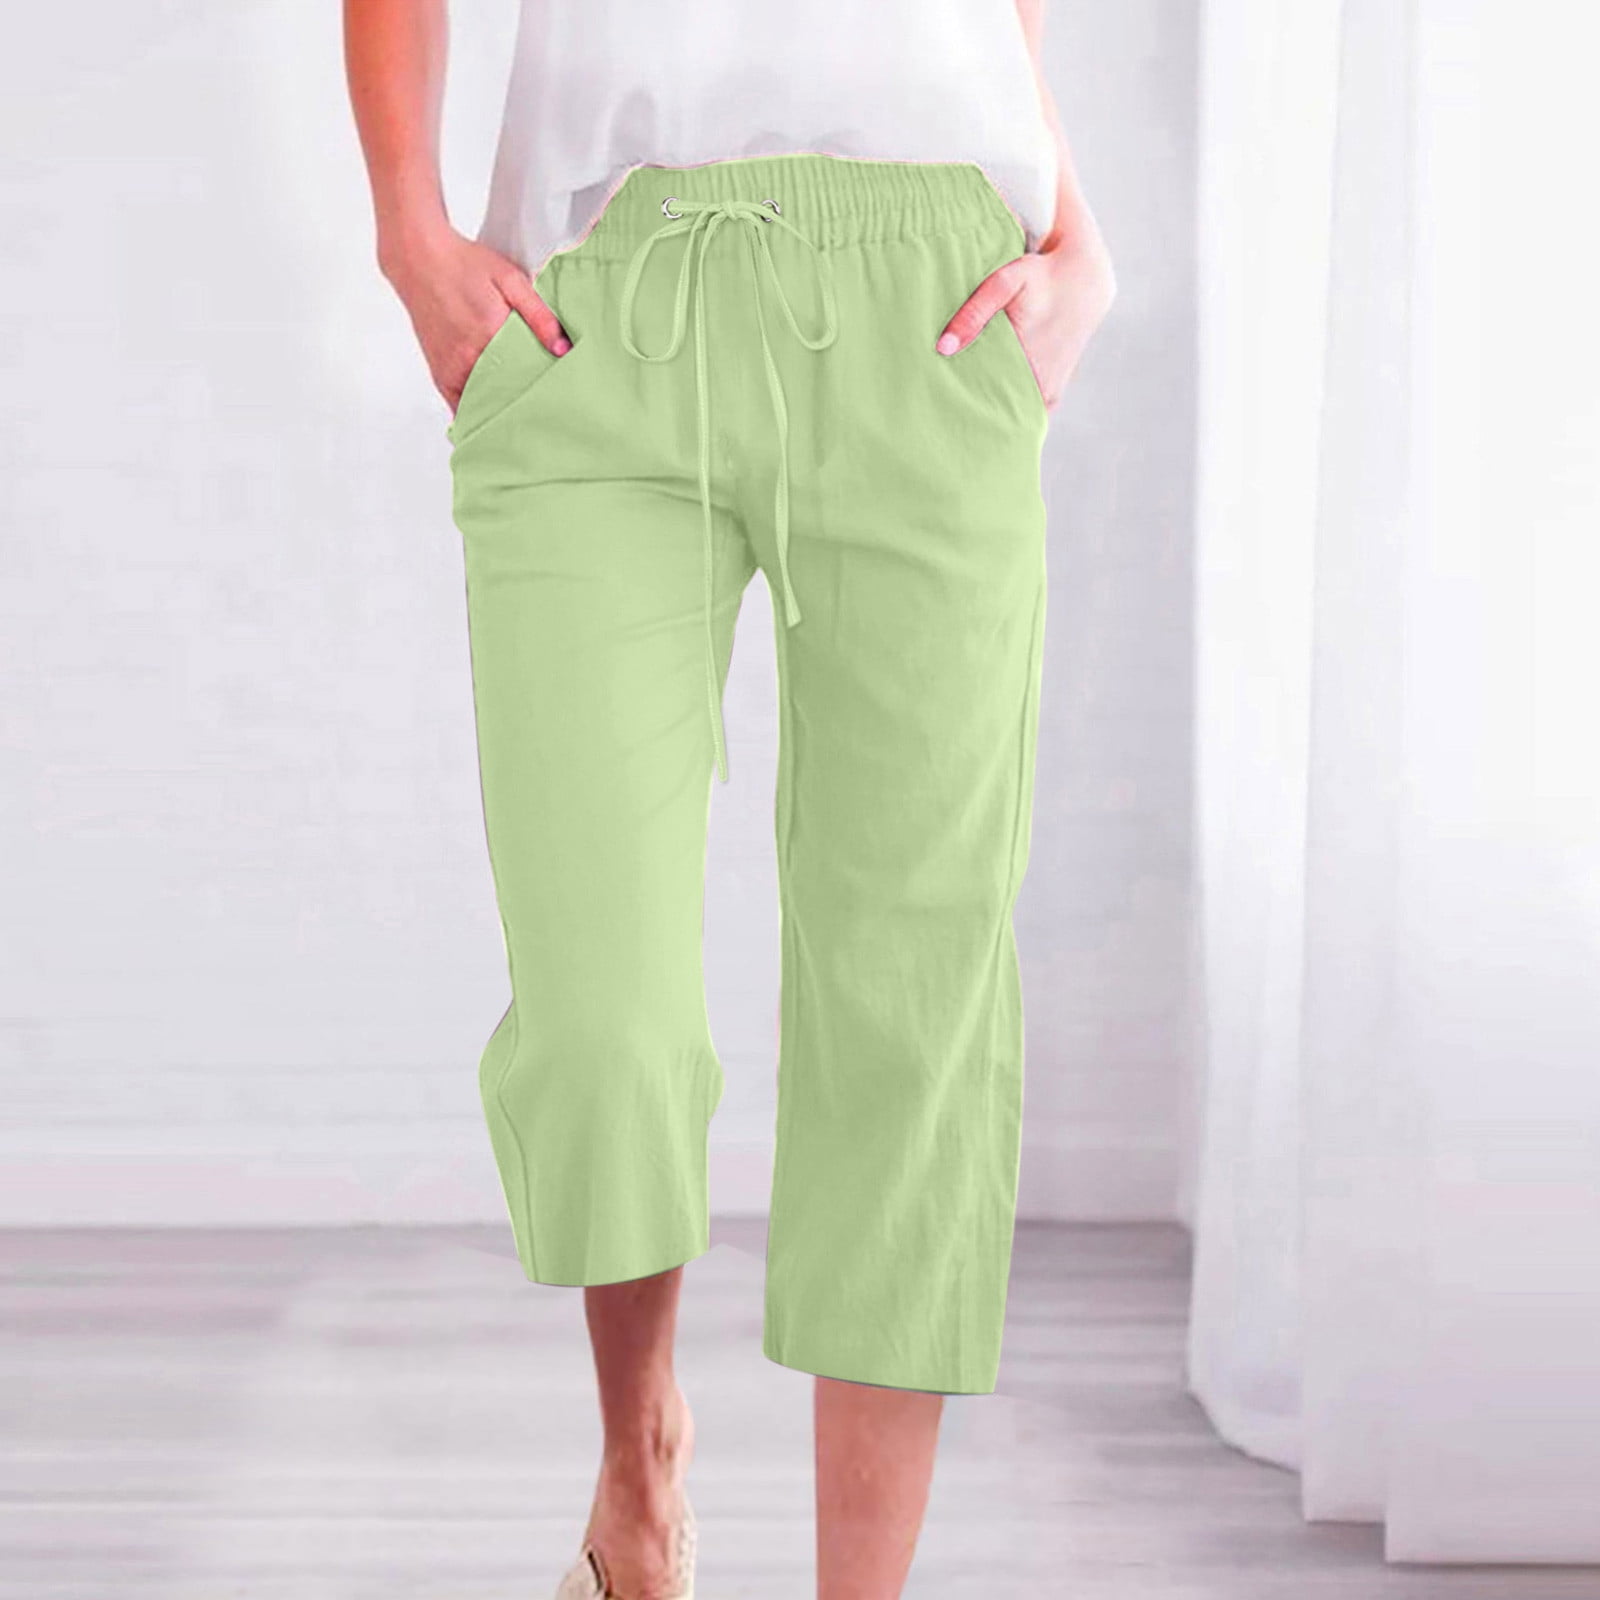 NWOT Womens Size 14 Kenar Cotton Capris Pants